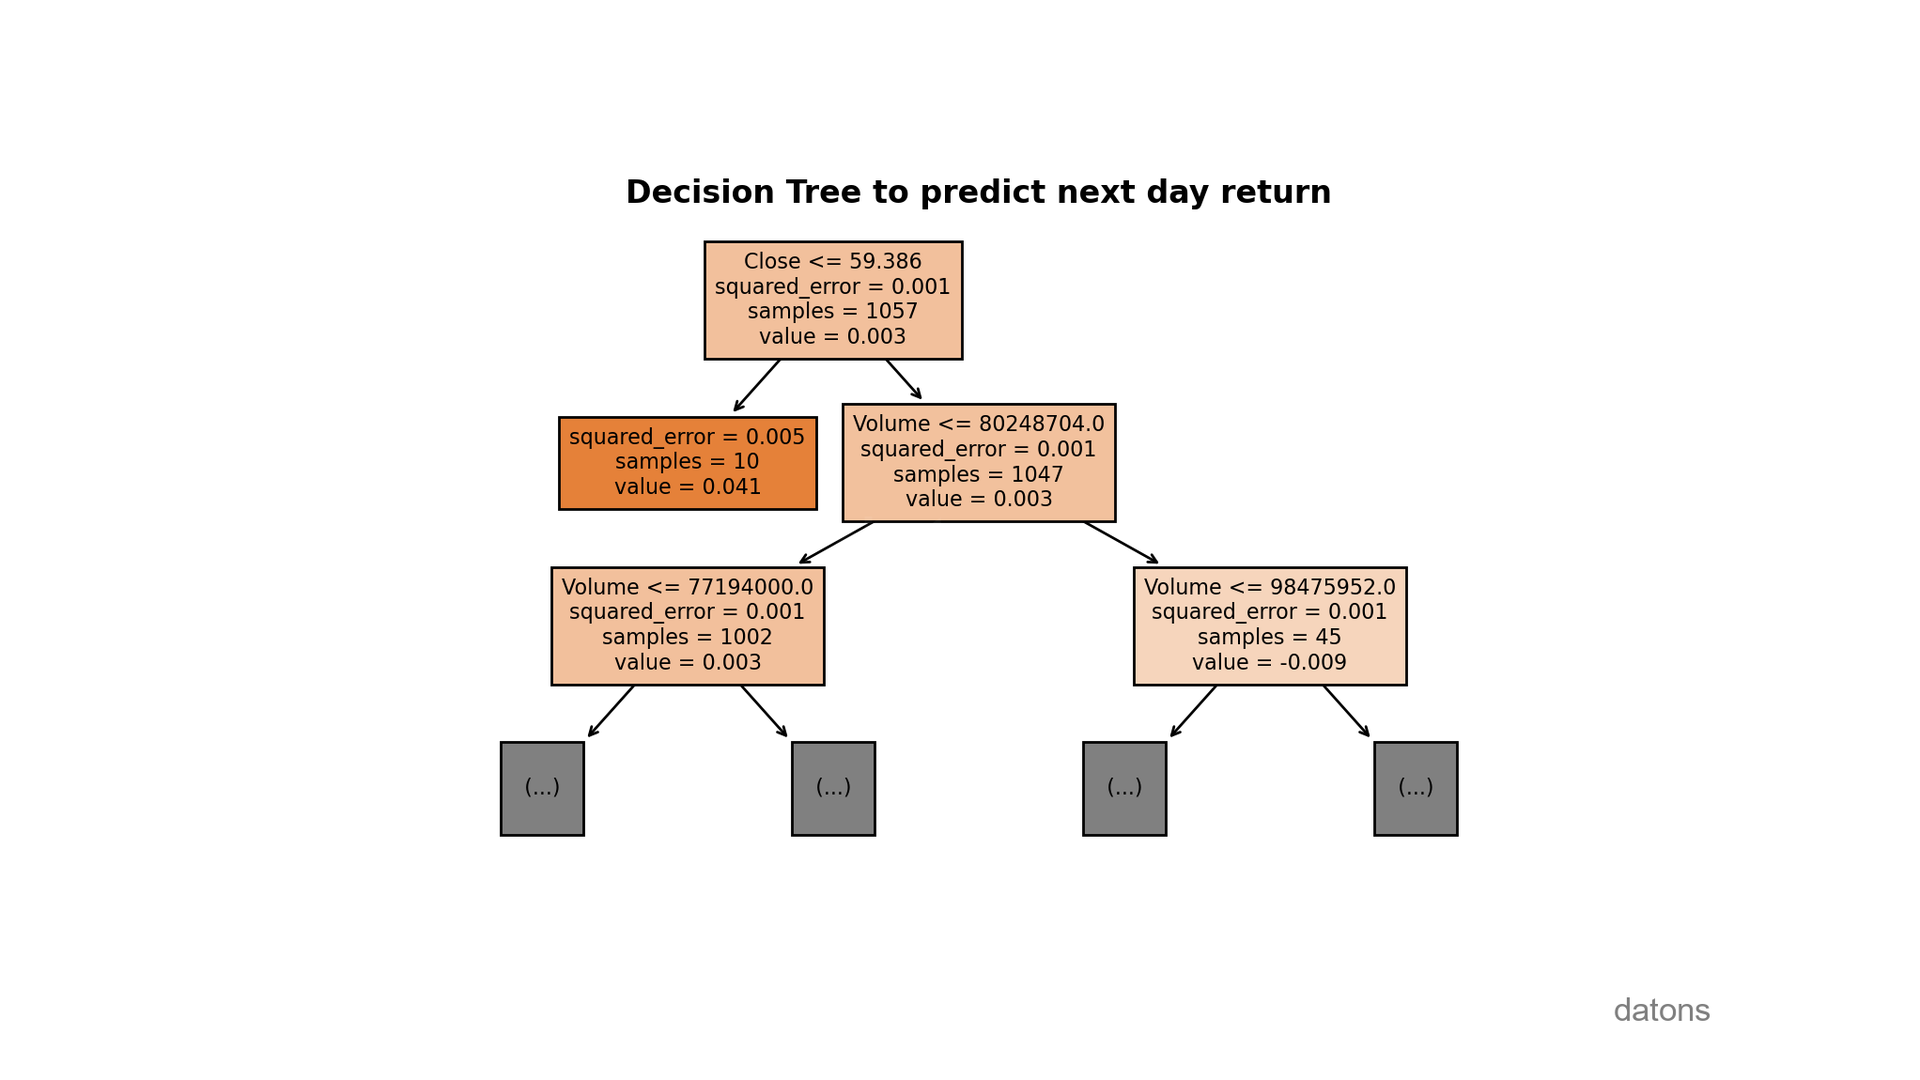 Representación gráfica de un modelo de árbol de decisión utilizado para predecir el precio de acciones, ilustrando cómo se divide el espacio de características para llegar a predicciones más precisas.